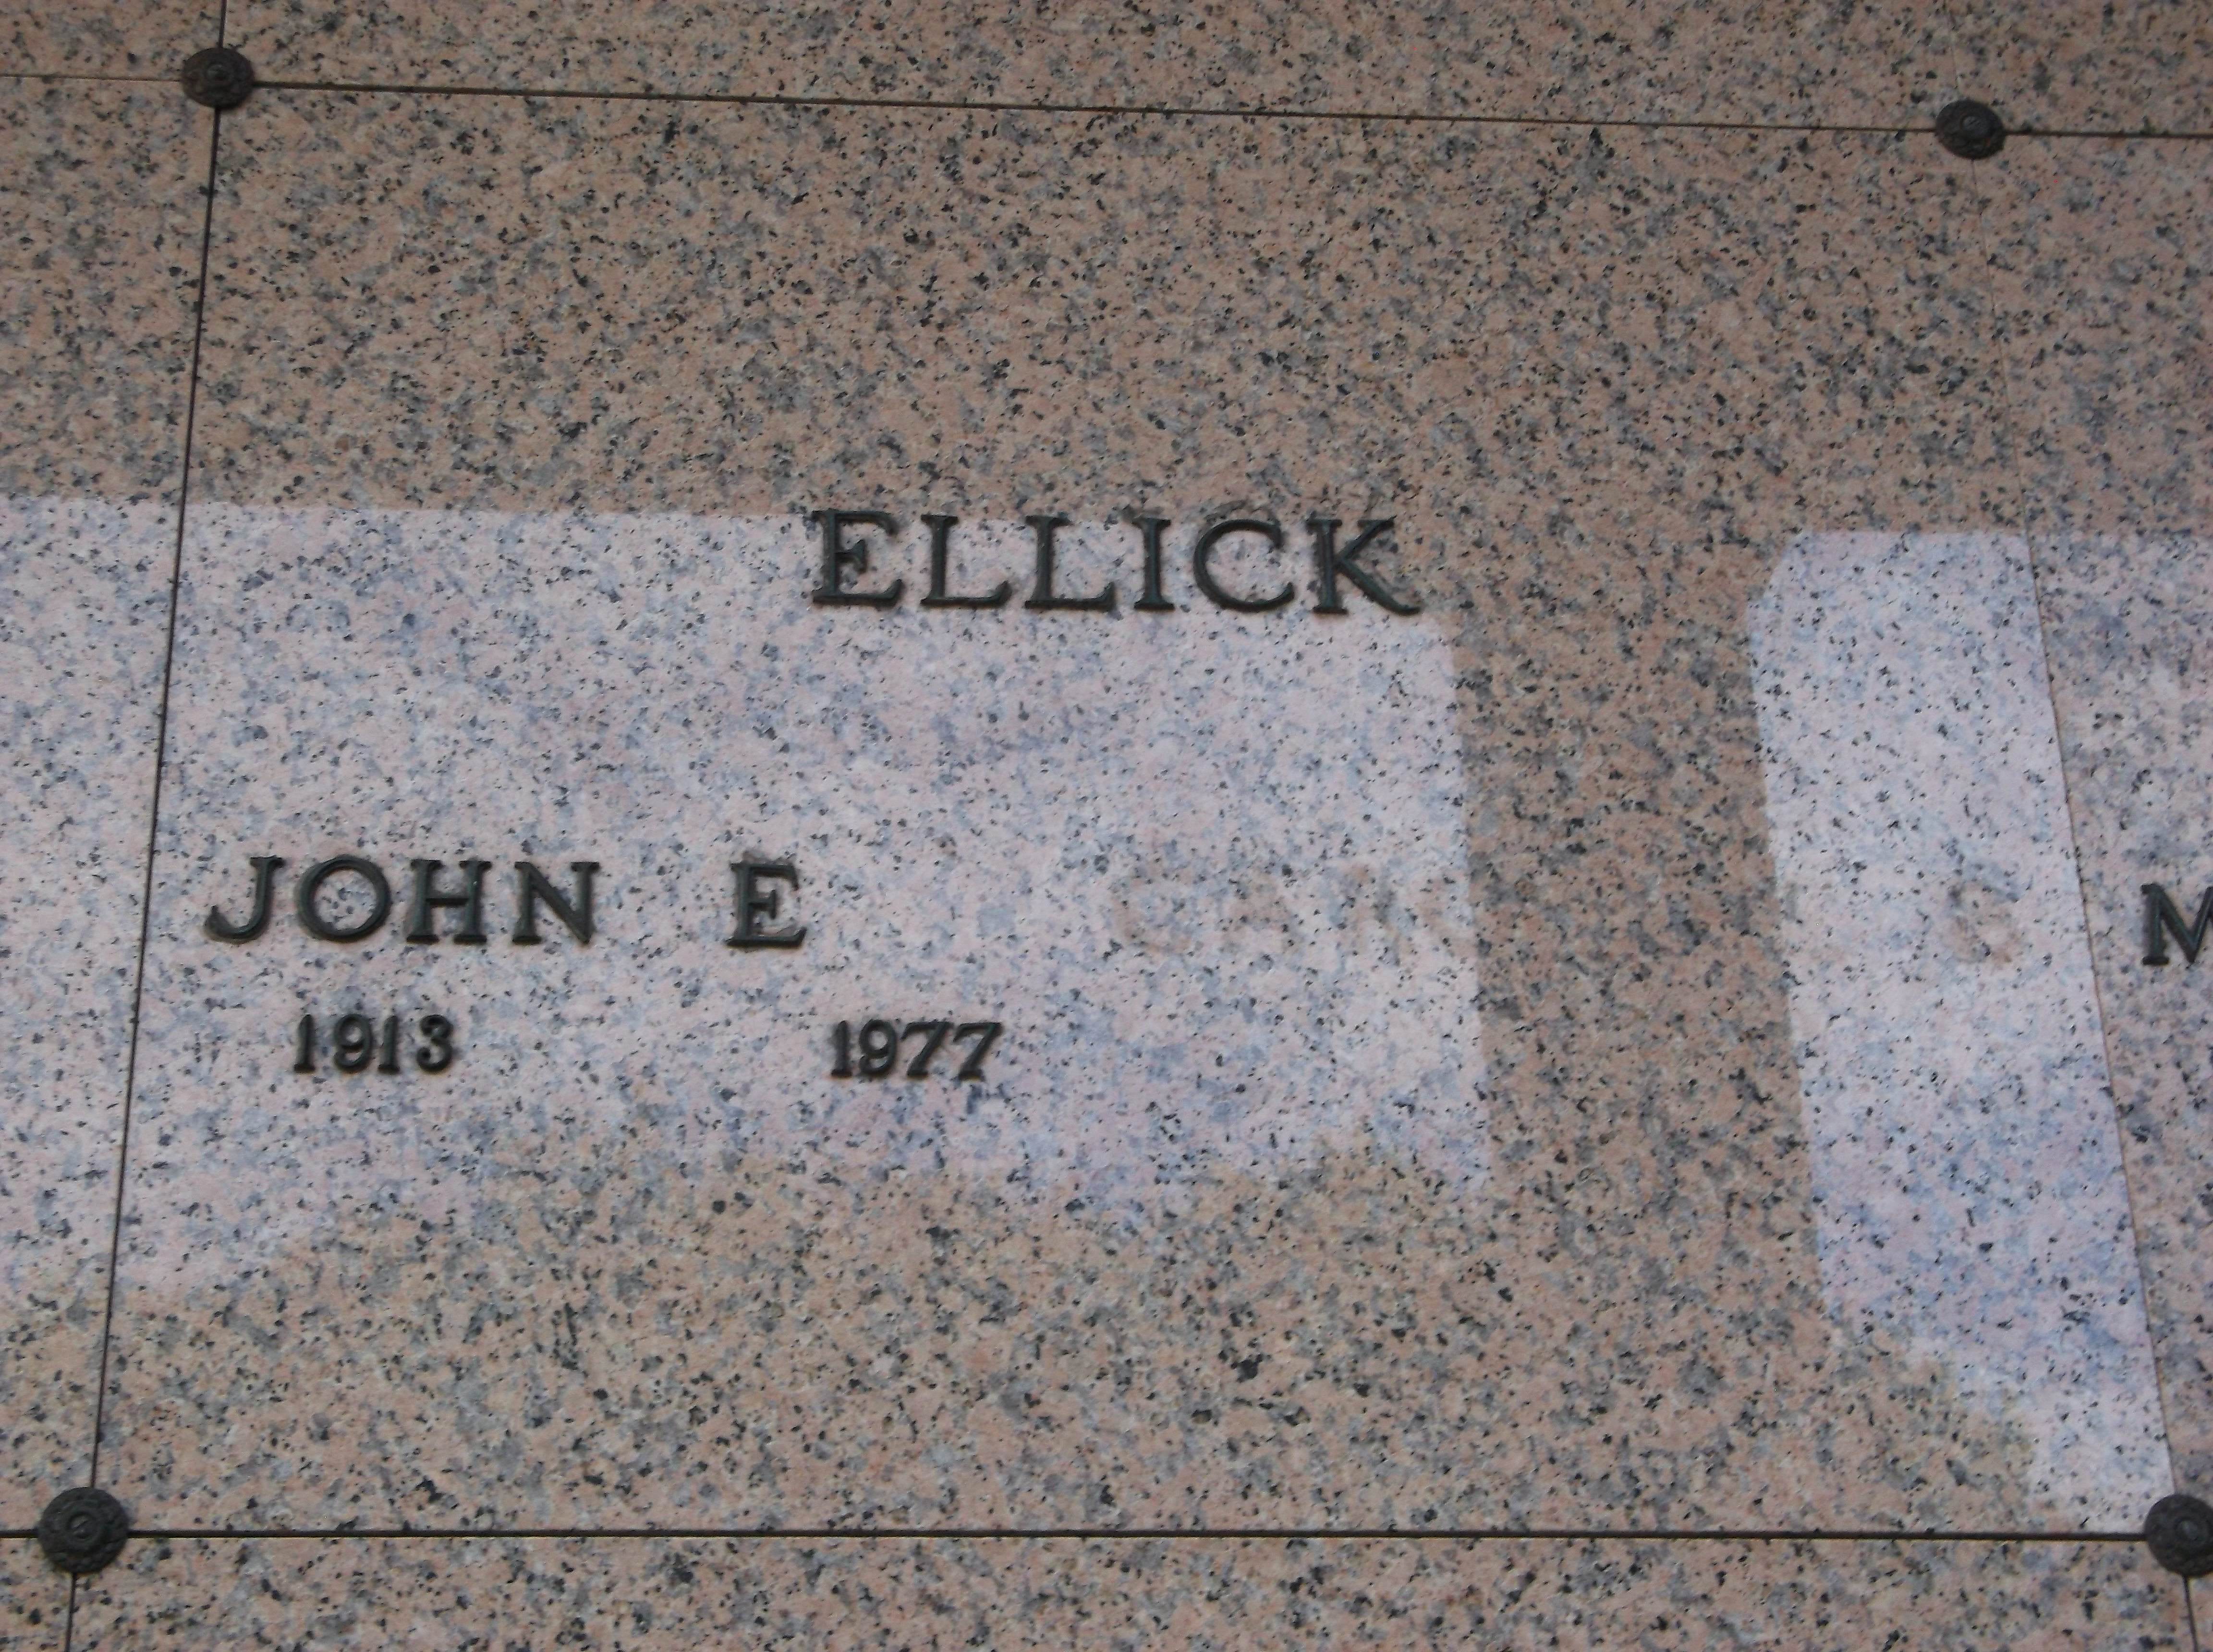 John E Ellick